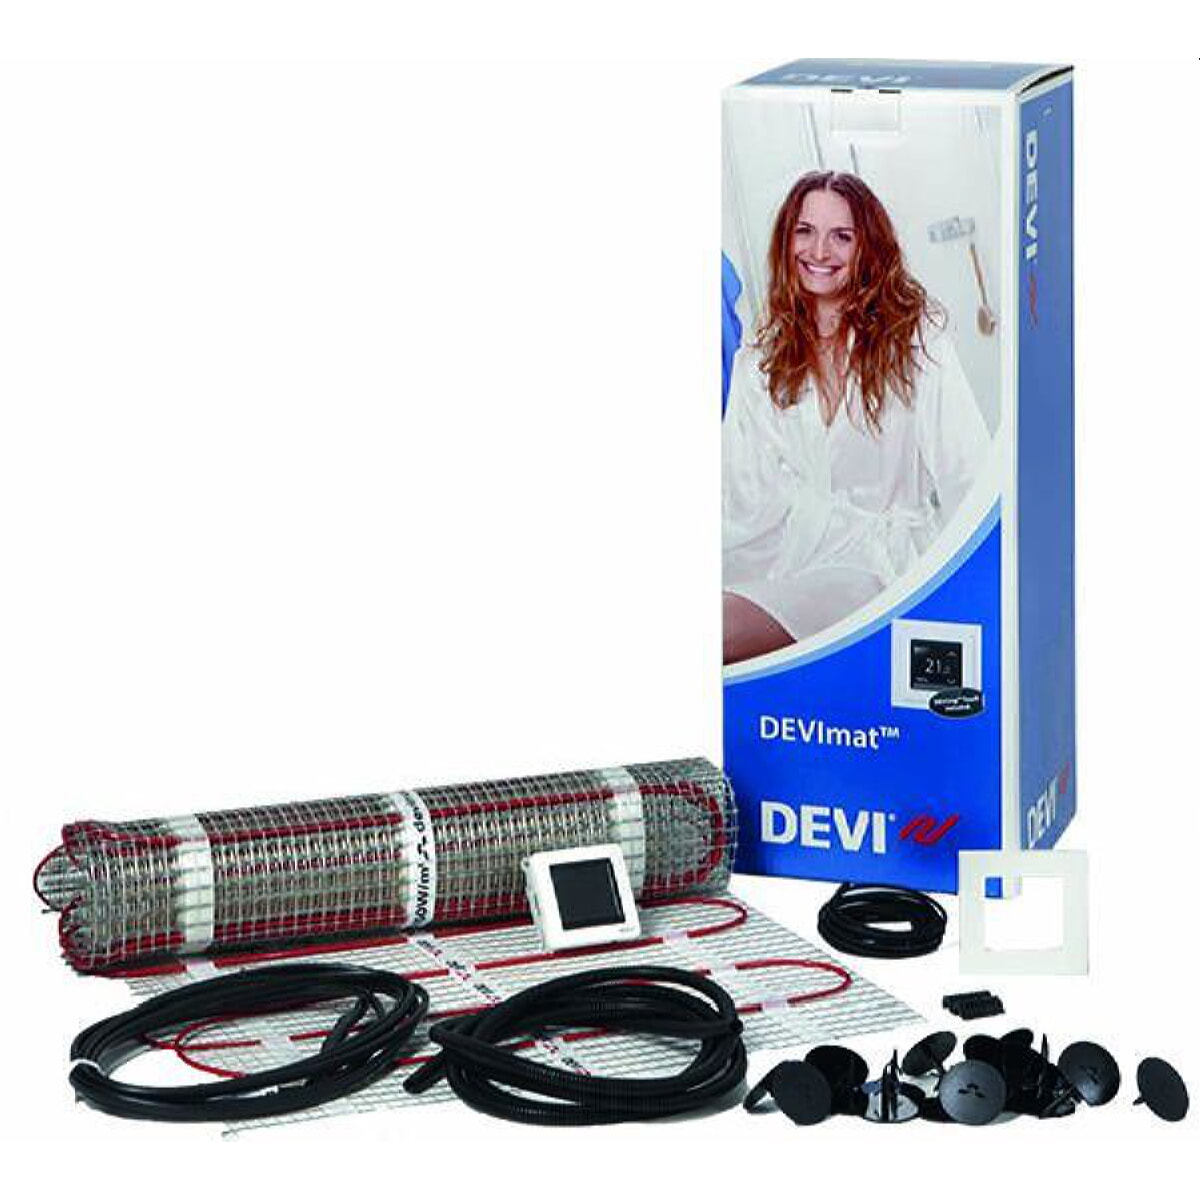 DEVI Dünnbett-Set mit Devireg Touch 900 W professional DTIF 6,0 qm 140F0824